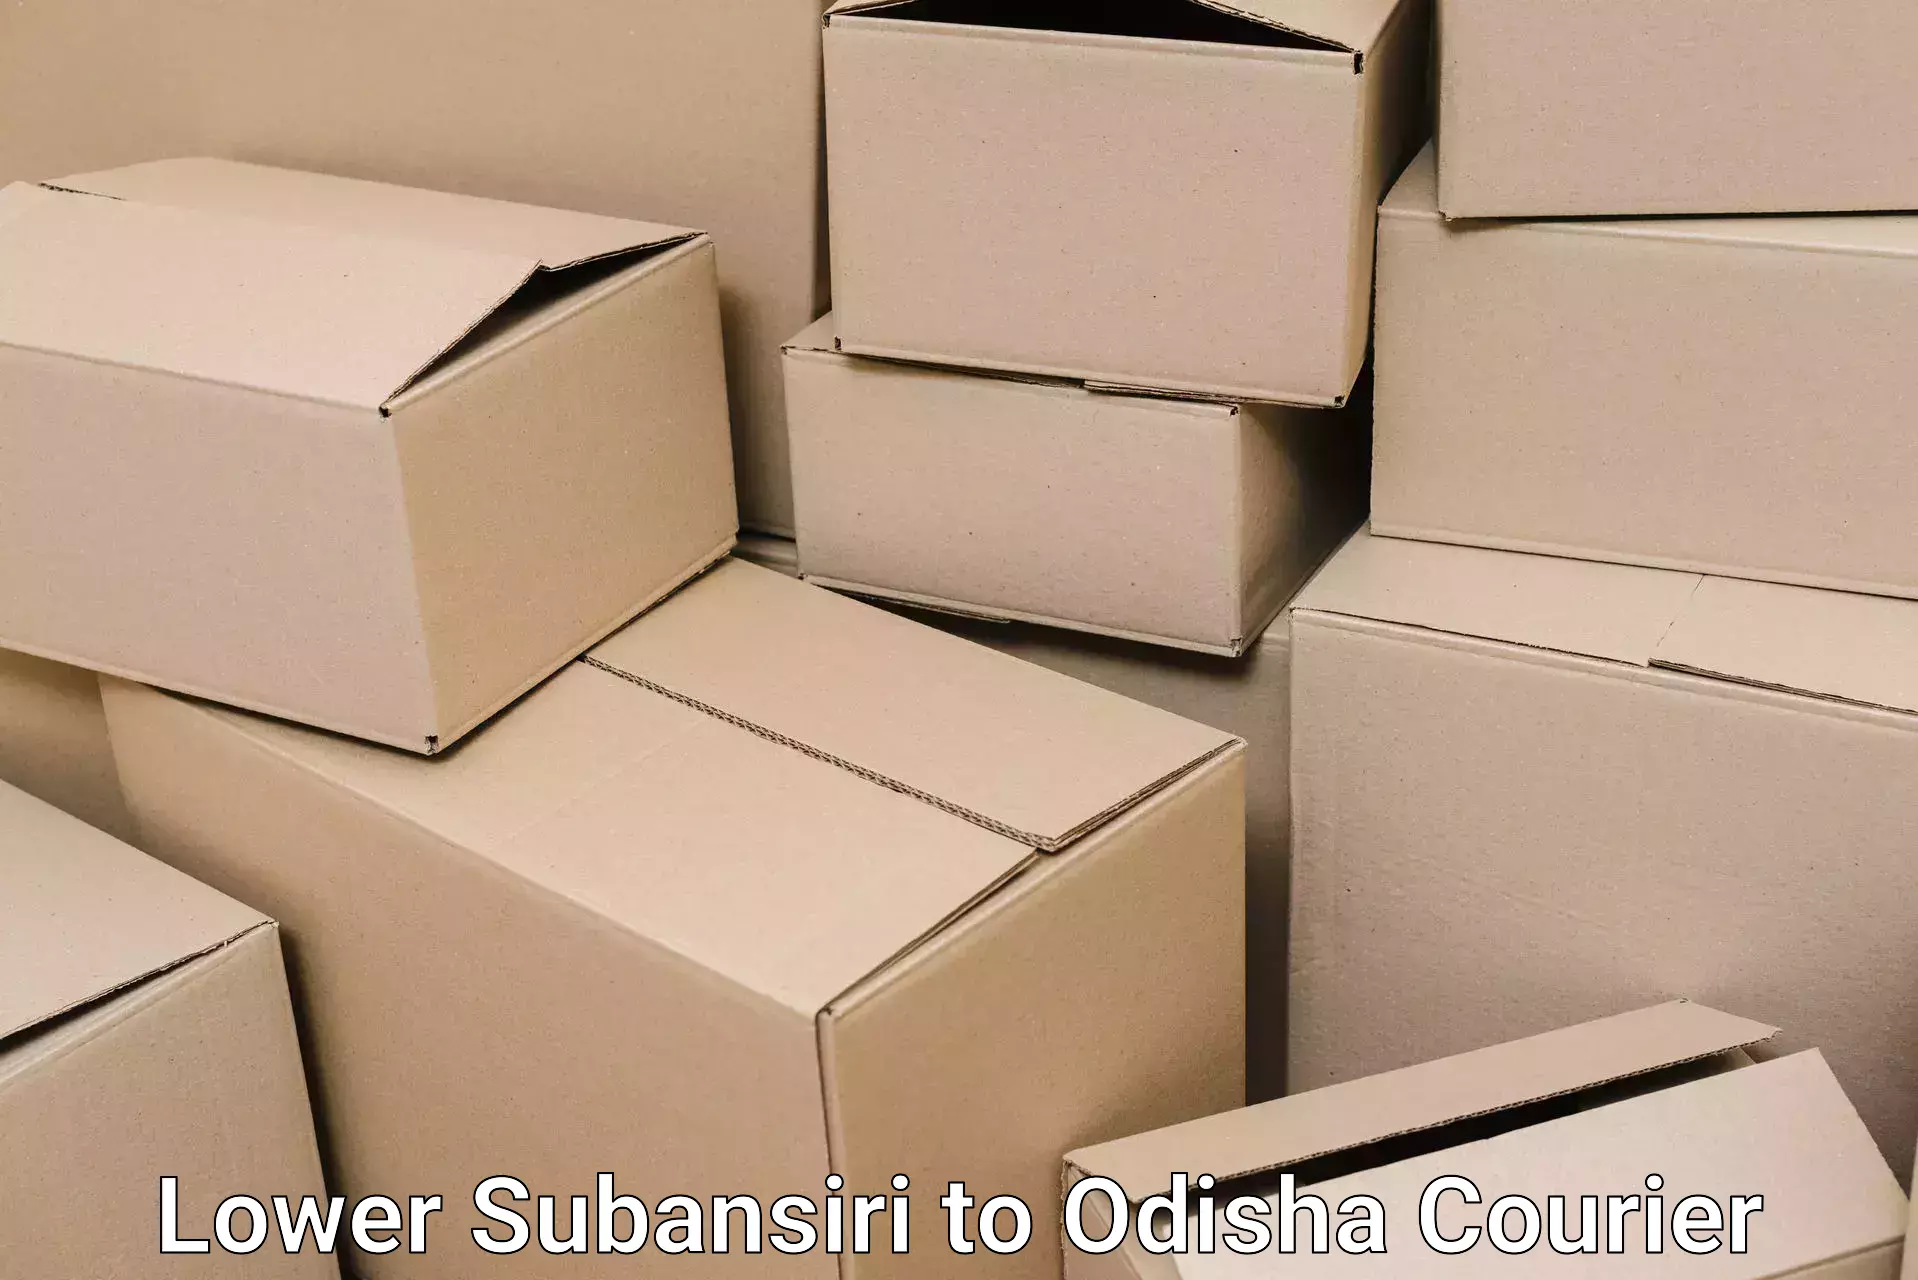 Specialized moving company Lower Subansiri to Sukinda